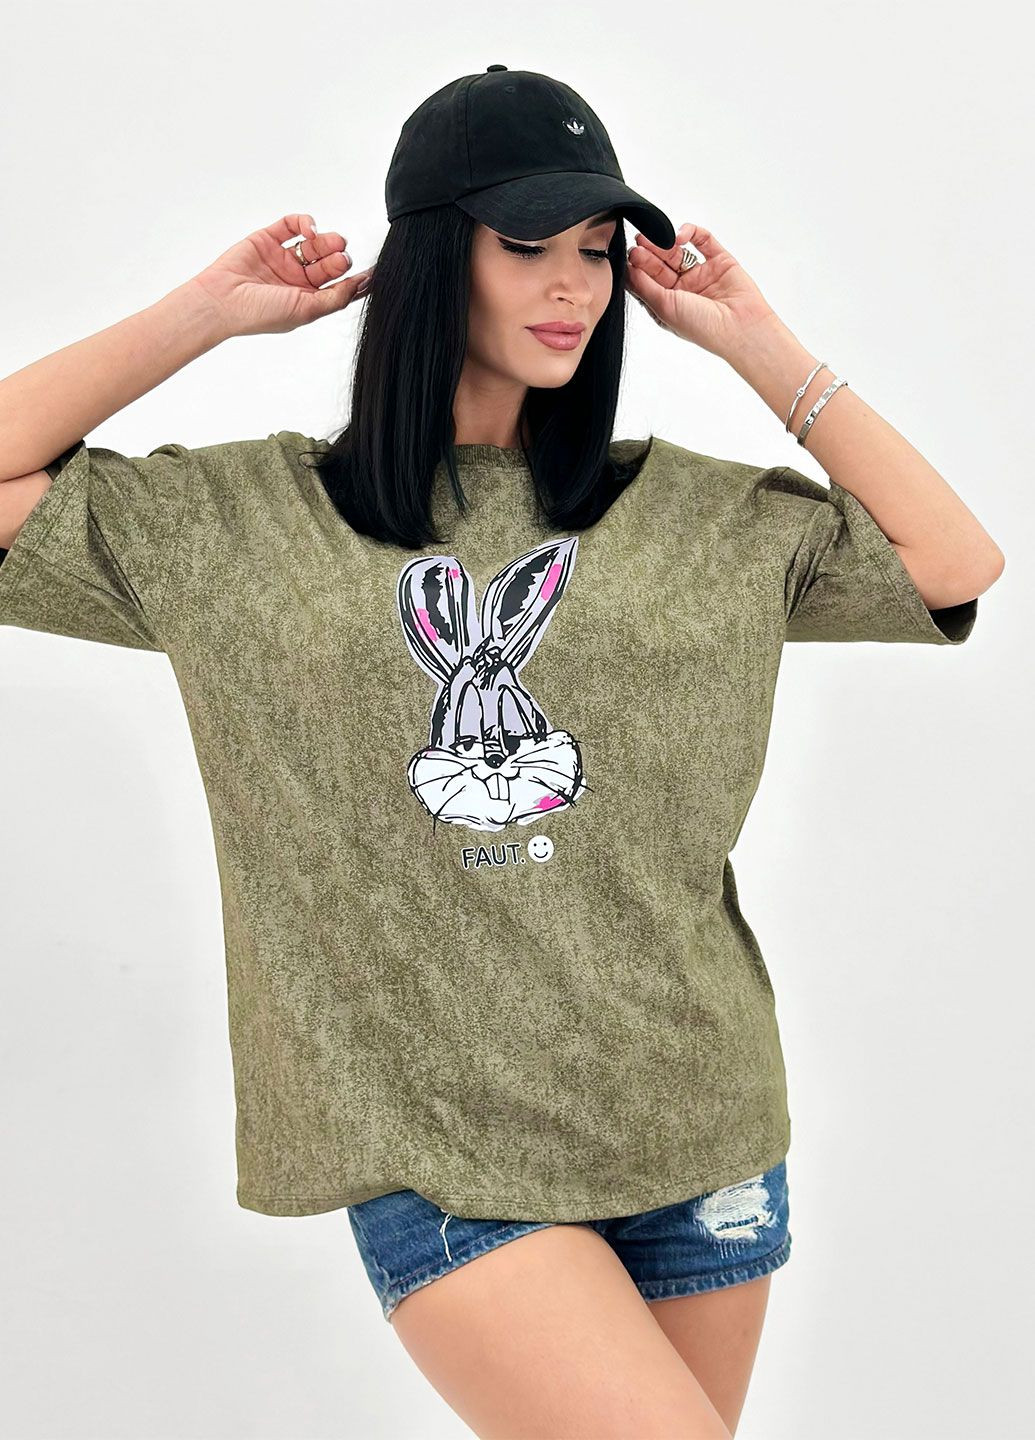 Хаки (оливковая) летняя летняя женская футболка с коротким рукавом Fashion Girl Roger